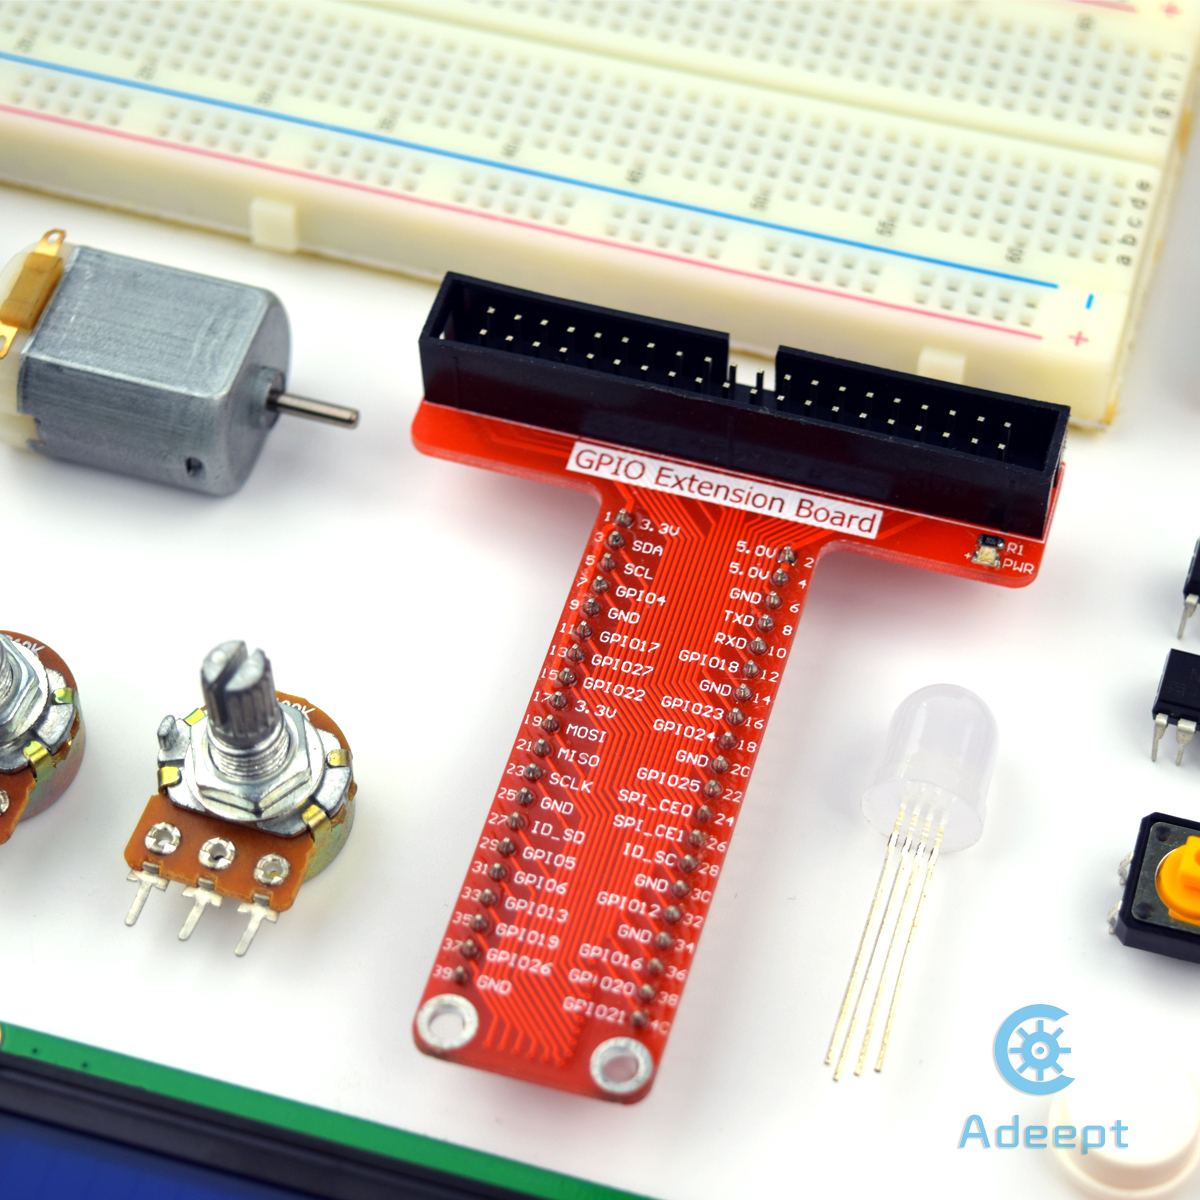 Adeept Super Starter Kit für Raspberry Pi - Zum Vergrößern klicken